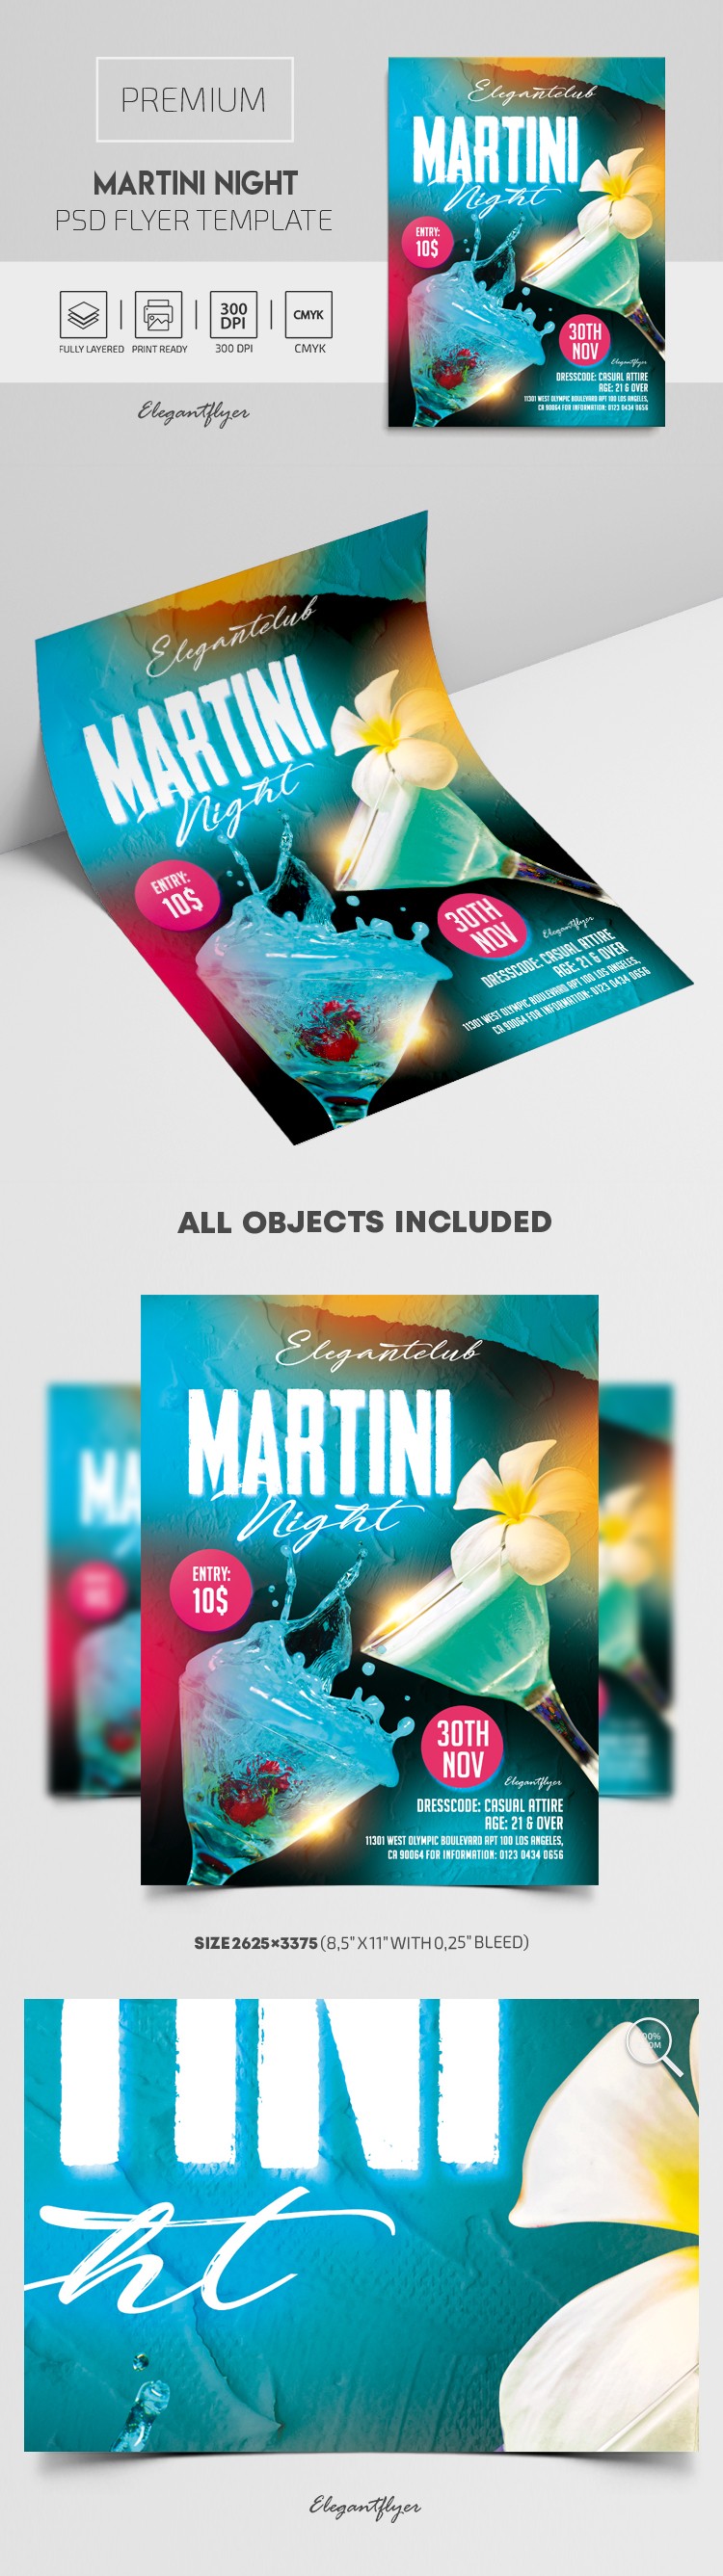 Martini Nacht Flyer by ElegantFlyer